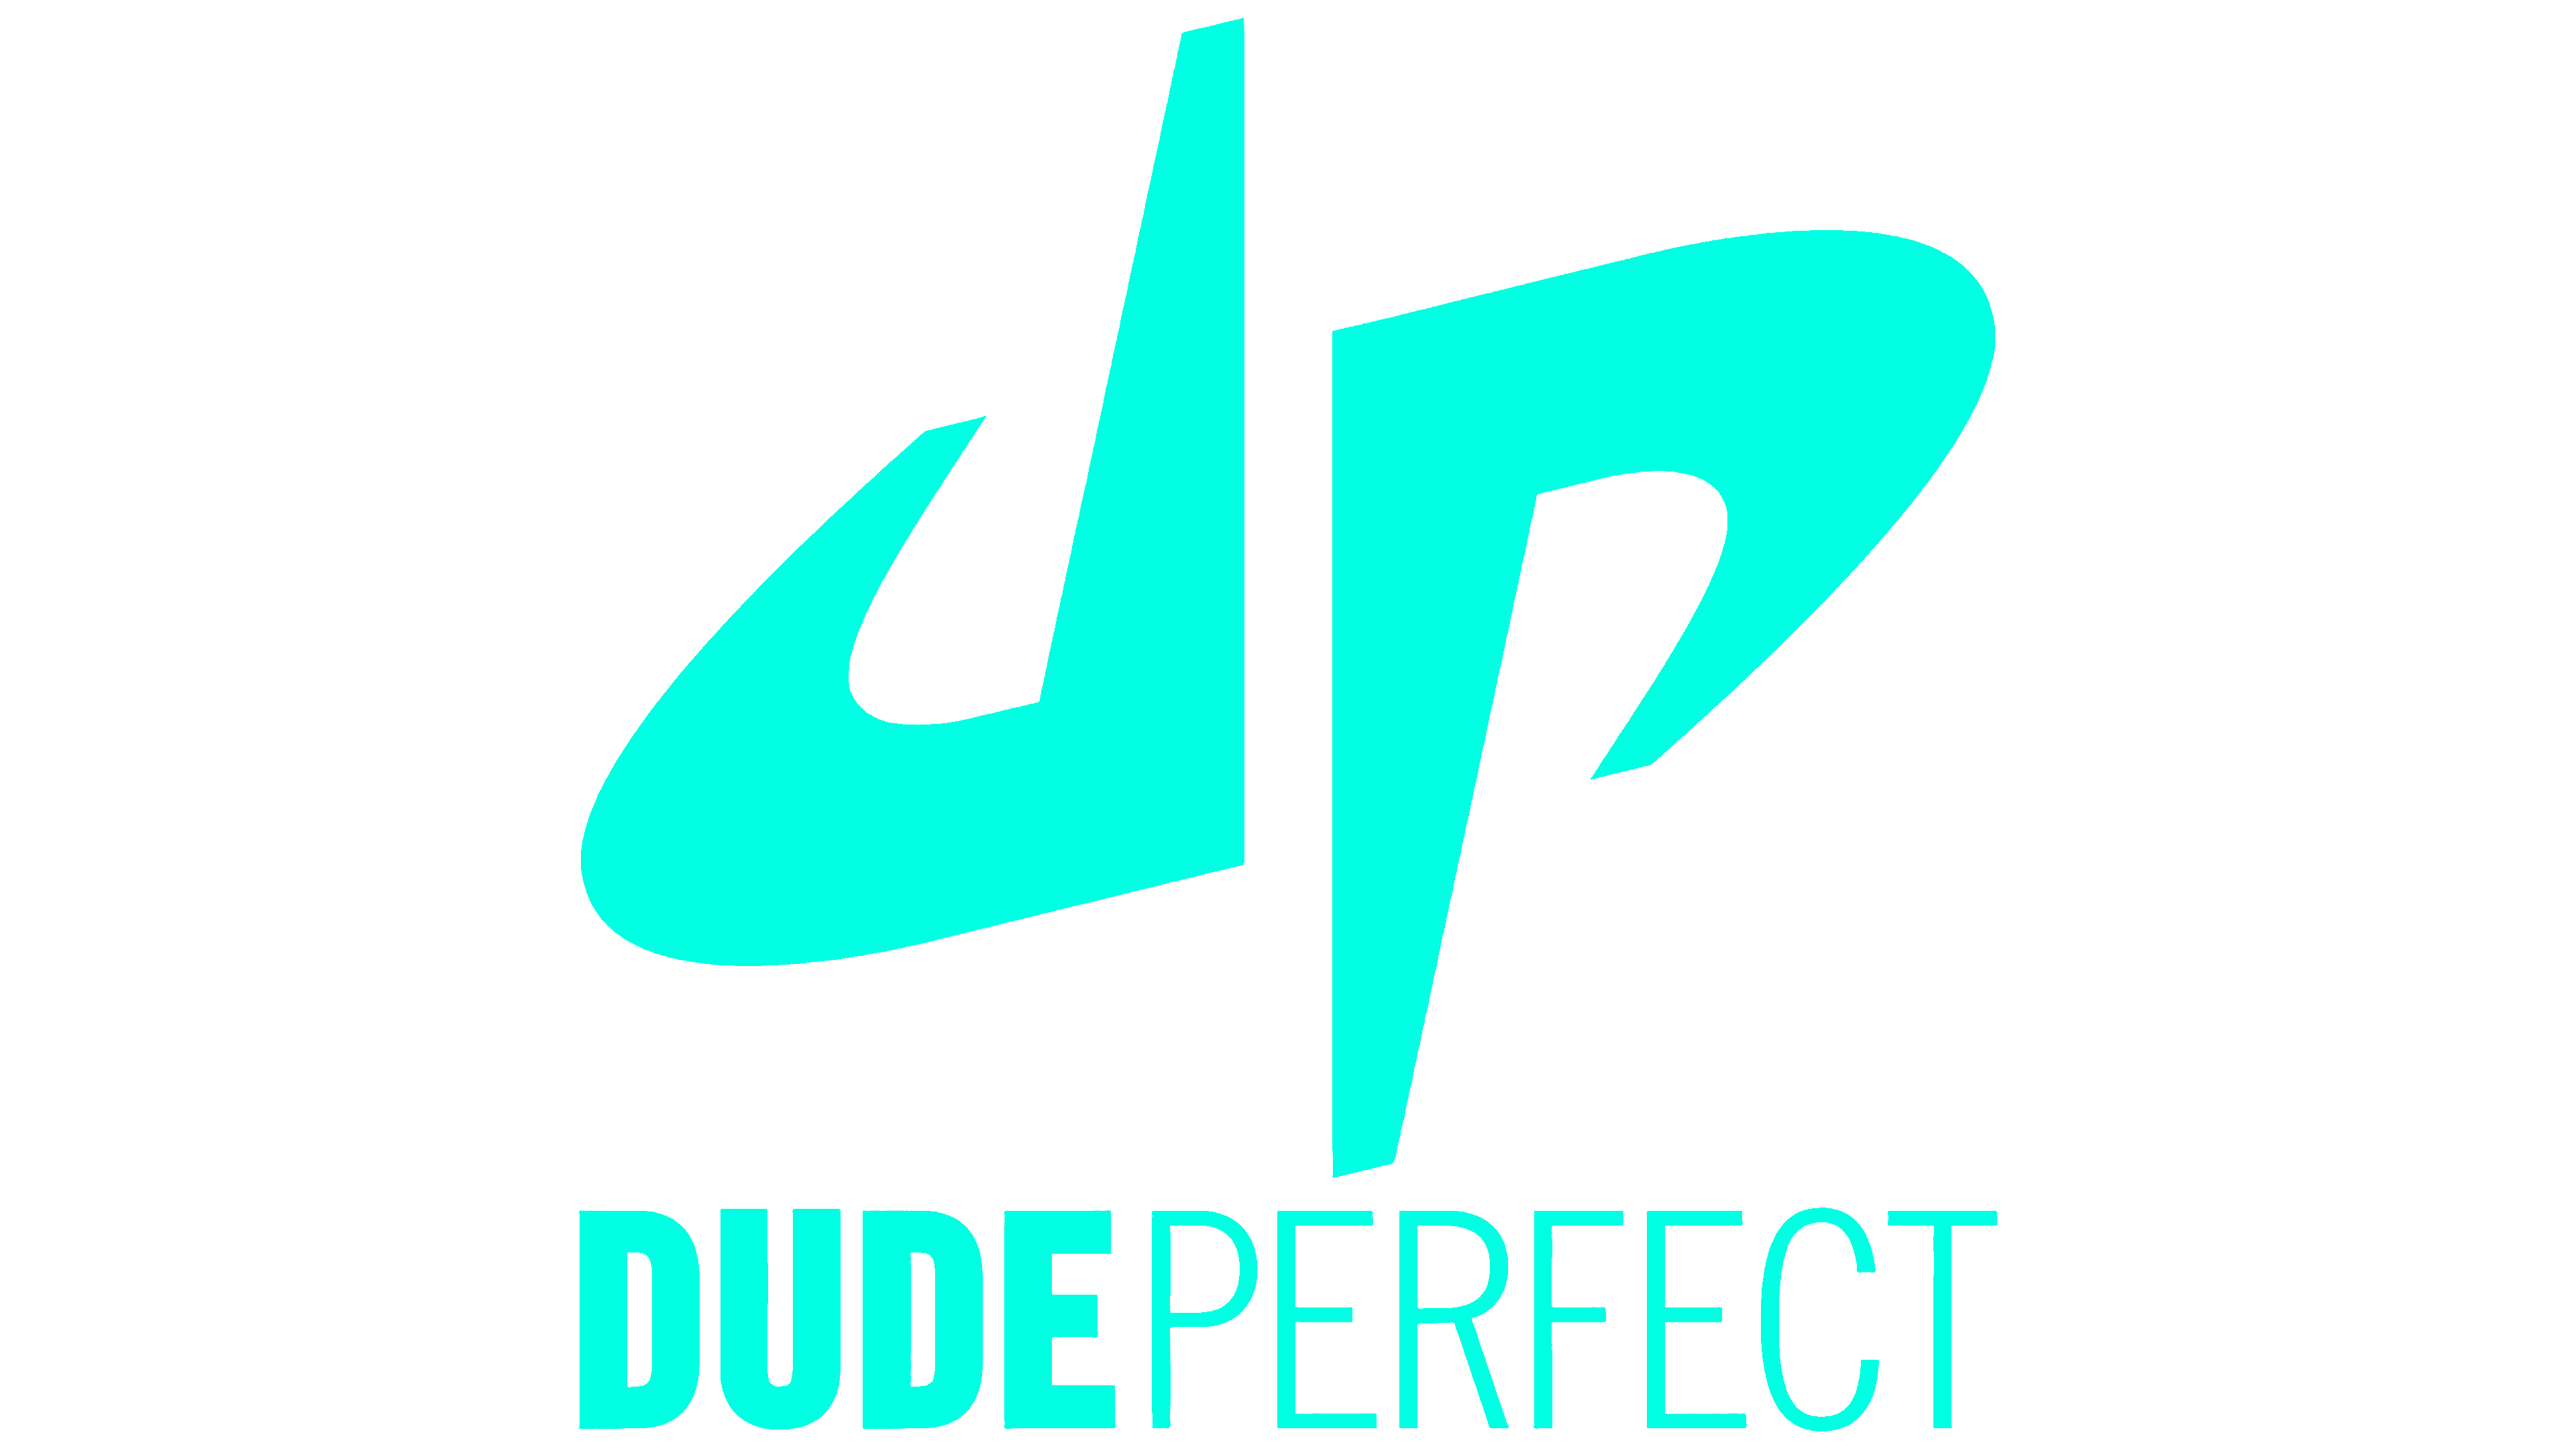 Update more than 155 dude perfect dp logo super hot - camera.edu.vn